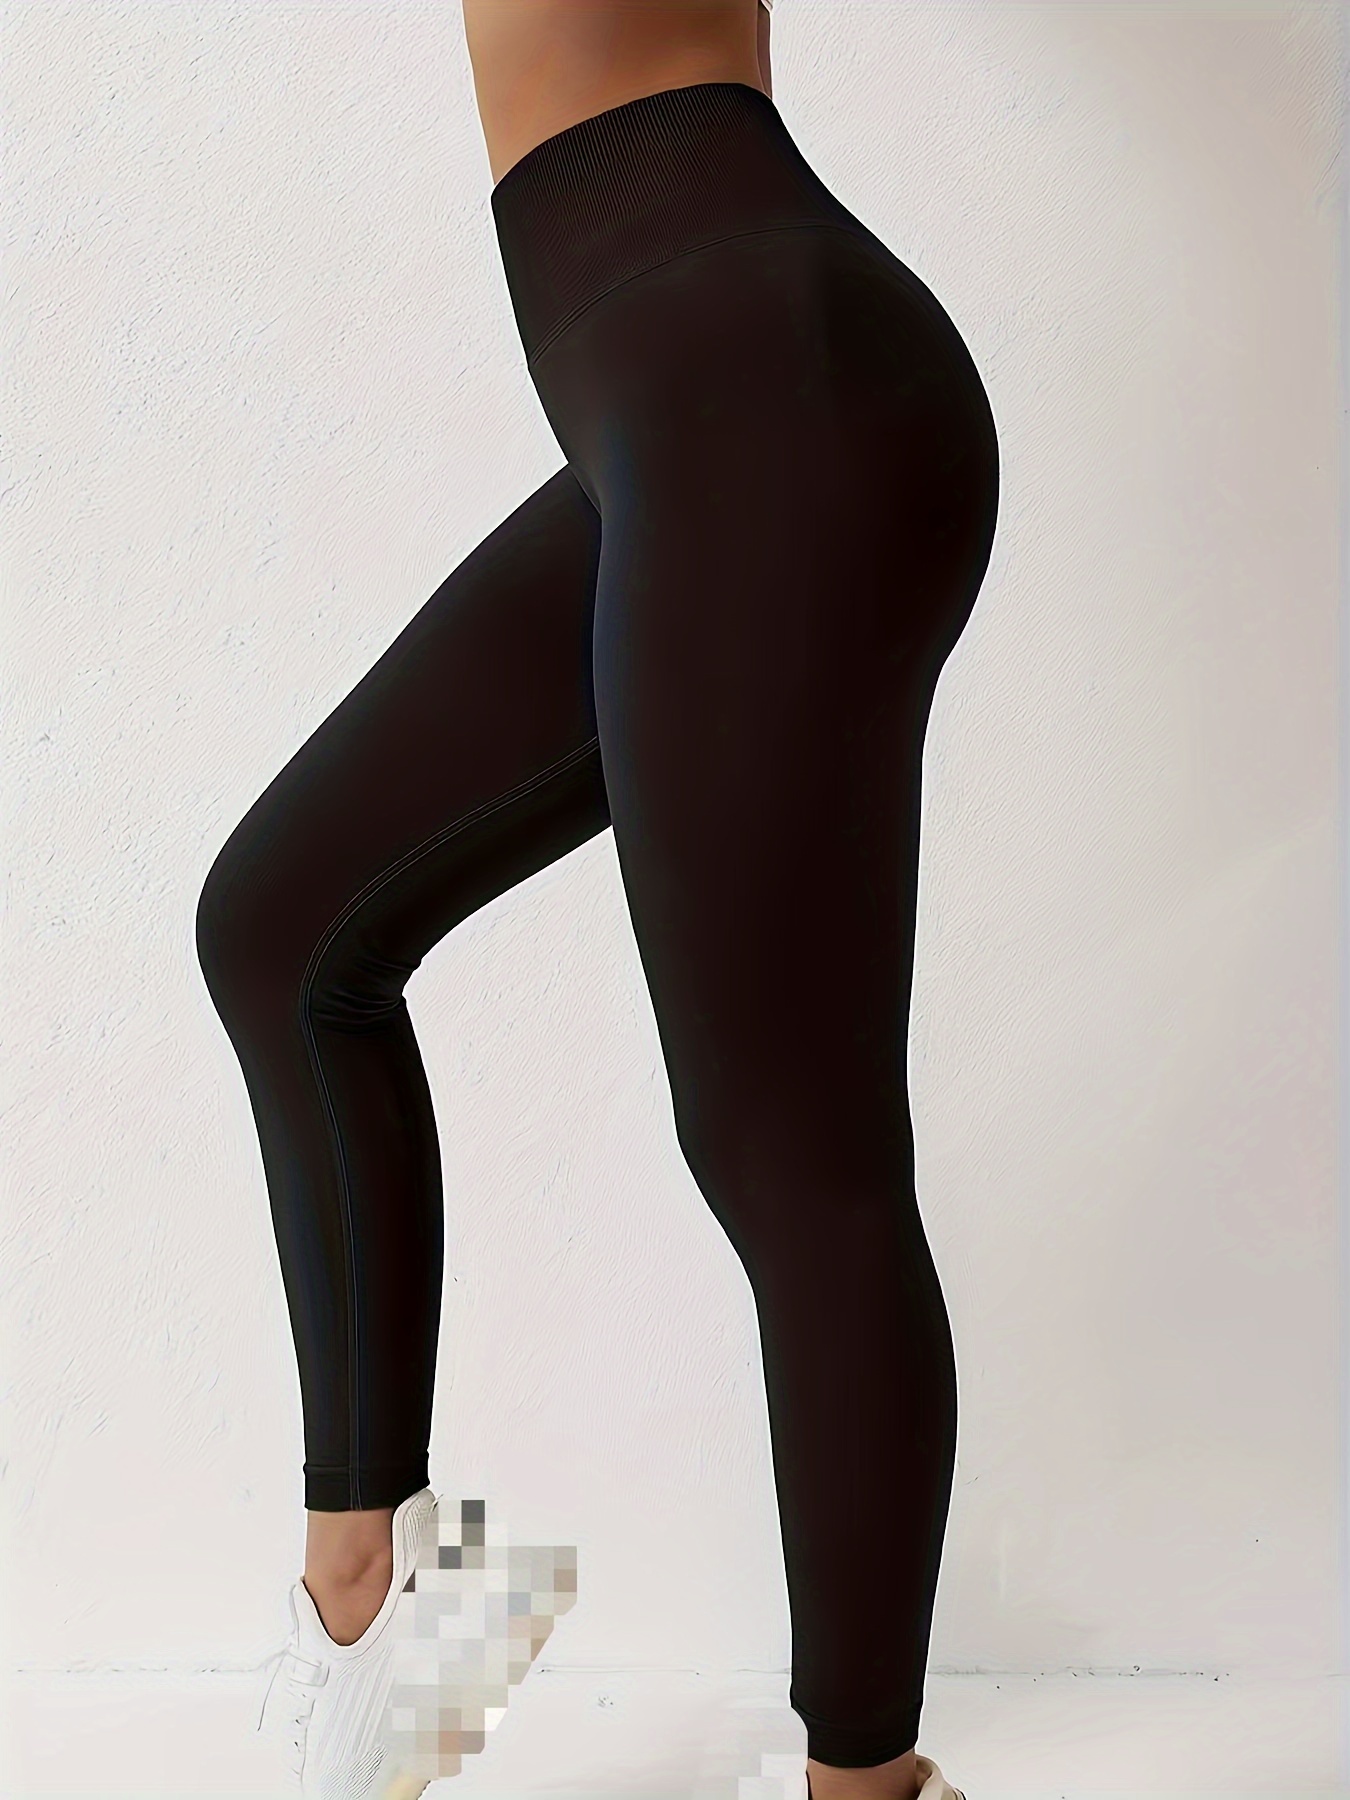 Women's leggings: high waist cotton sport leggings